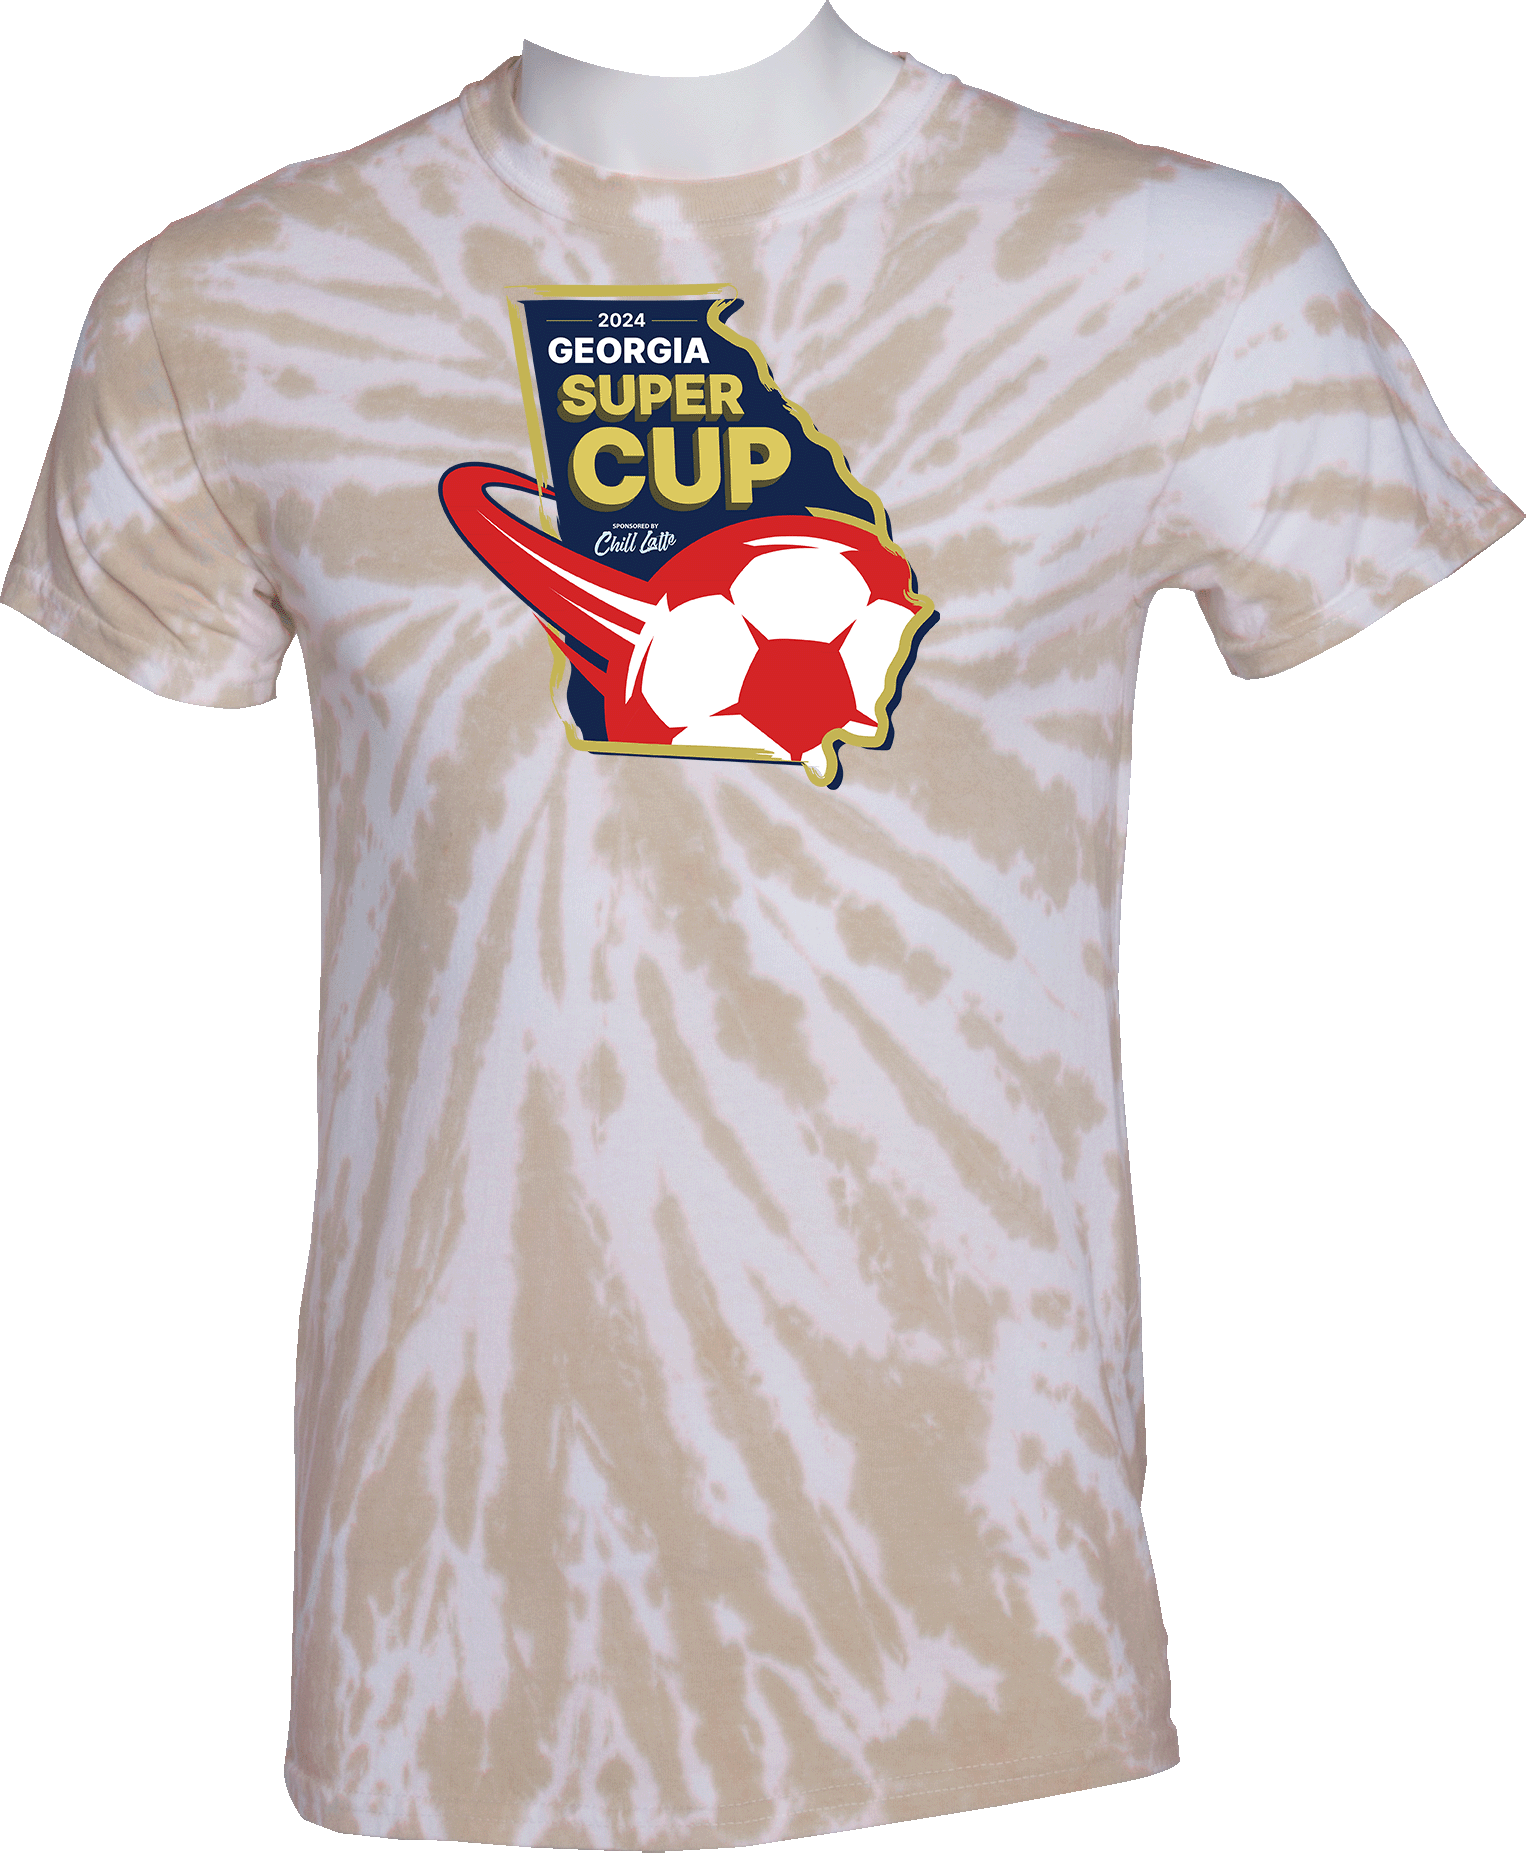 Tie-Dye Short Sleeves - 2024 Georgia Super Cup